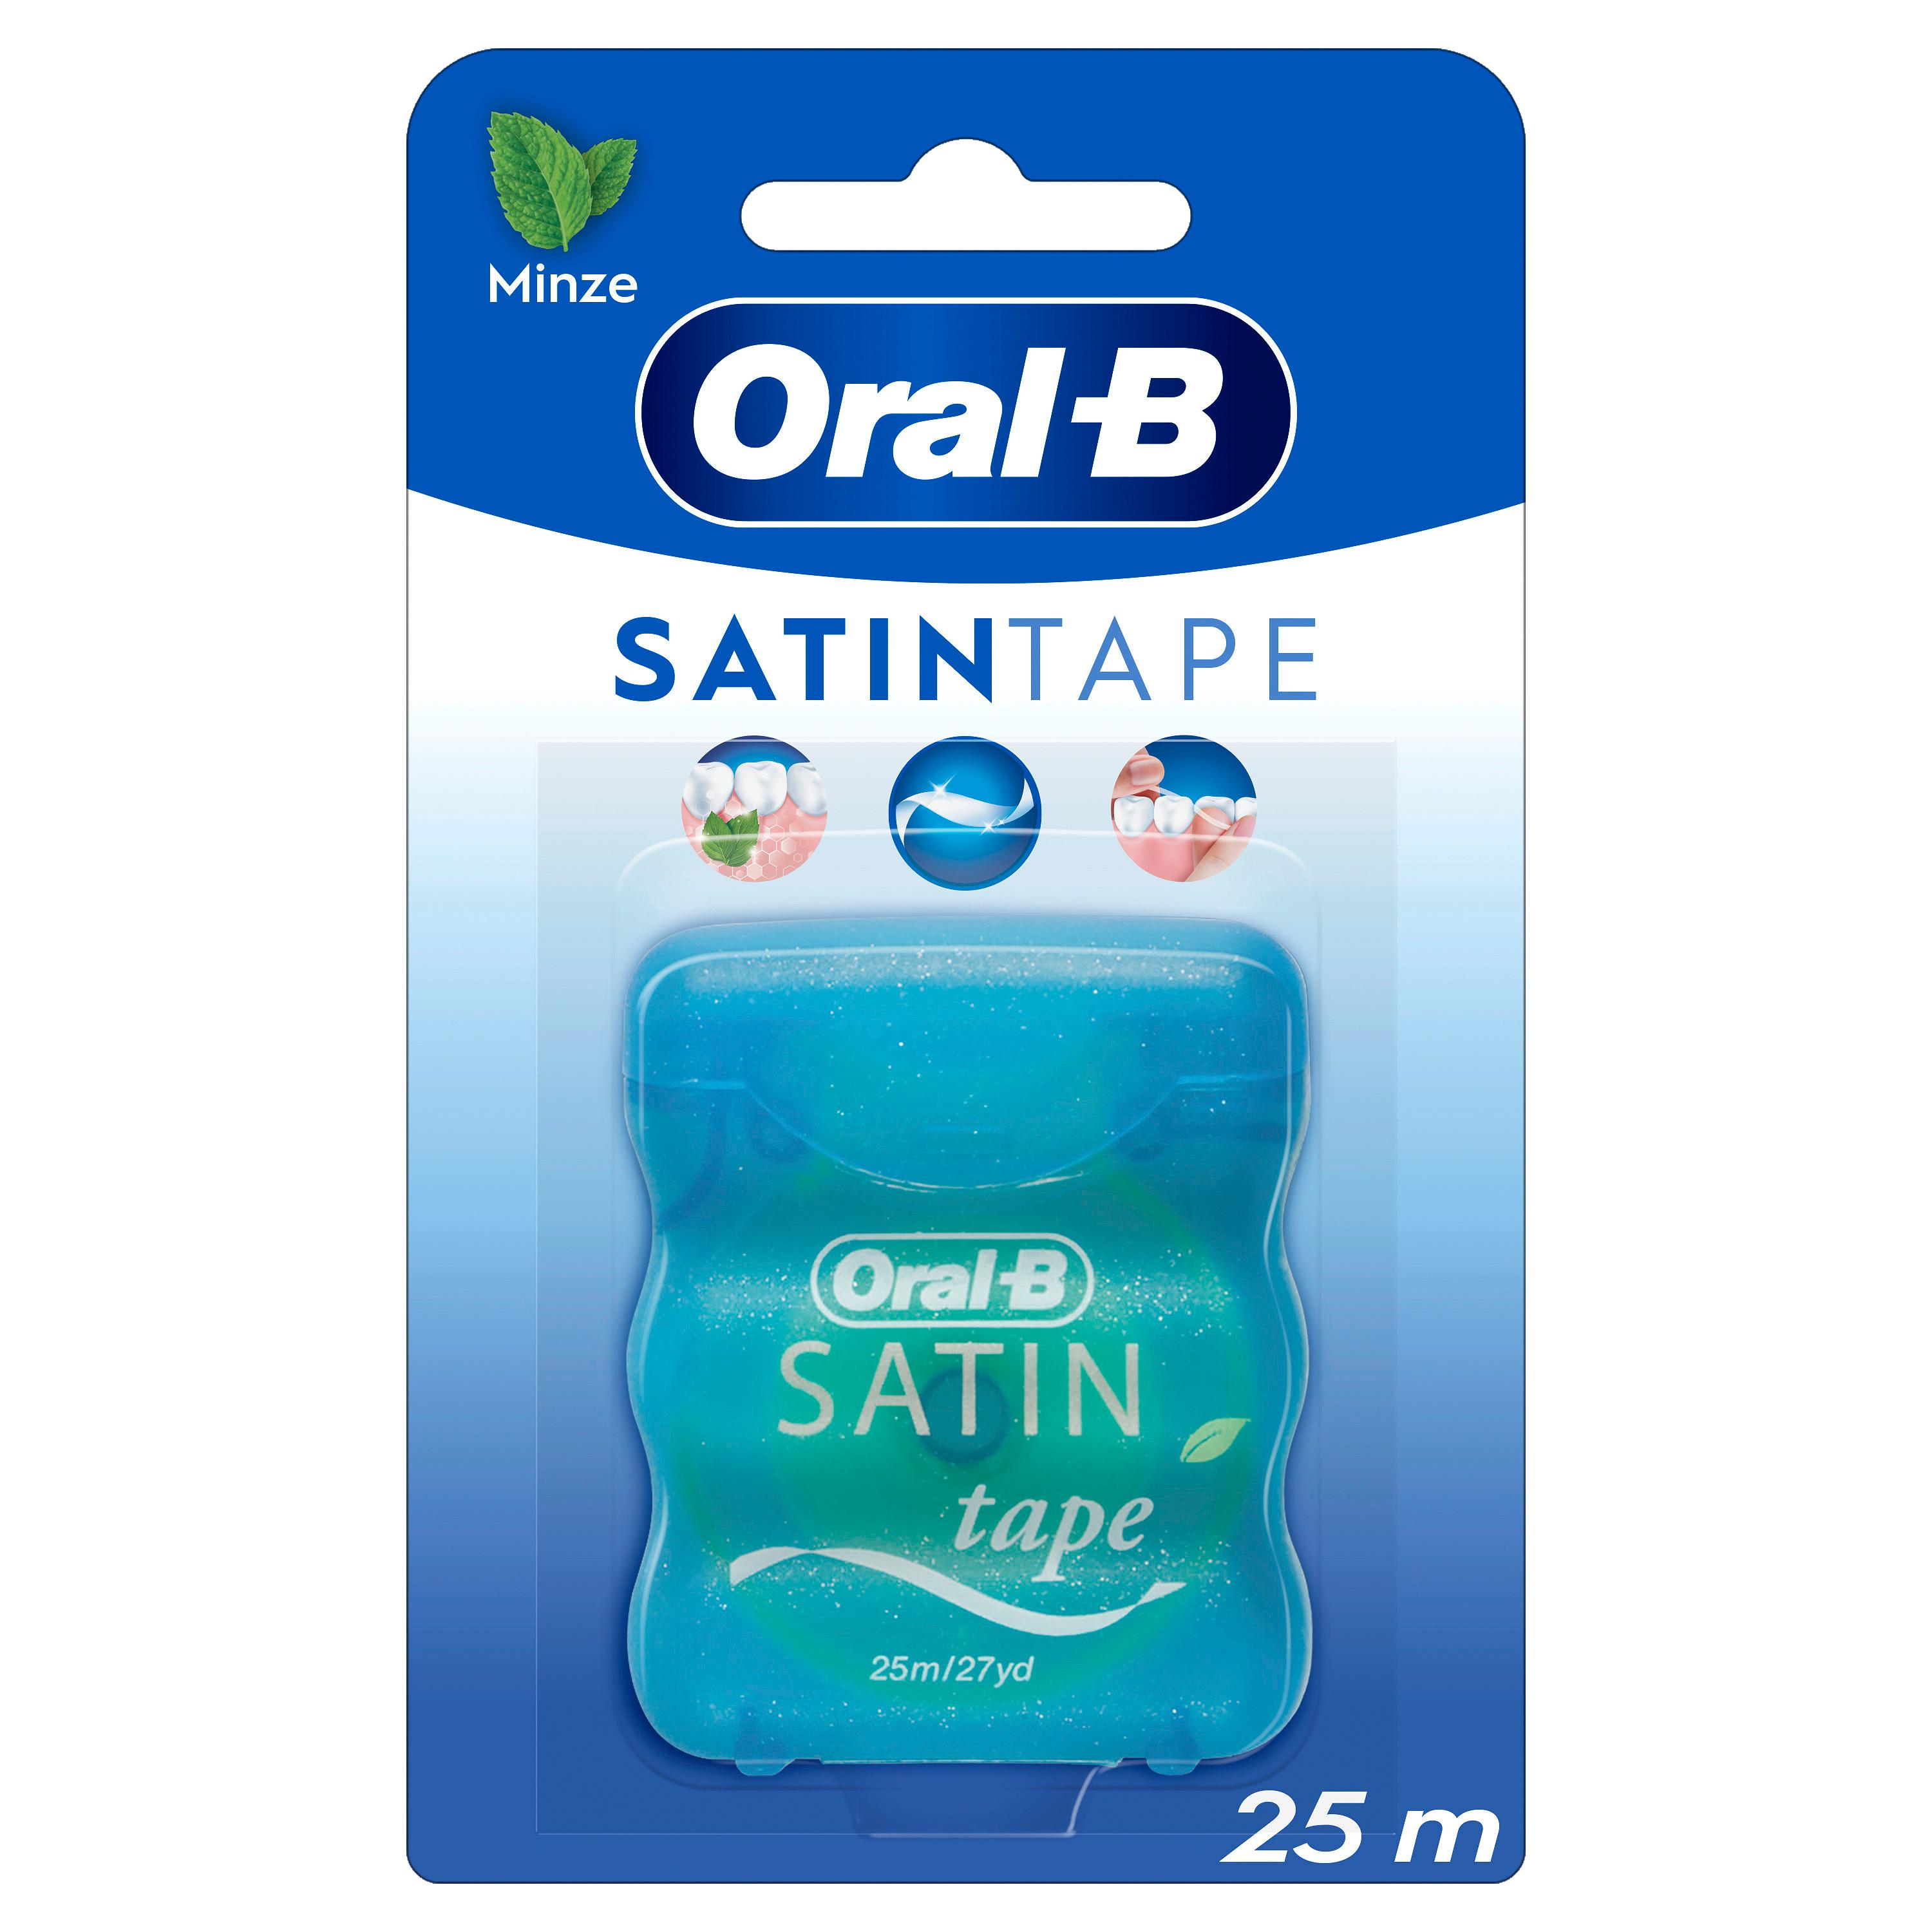 Oral B - SATINtape 25m